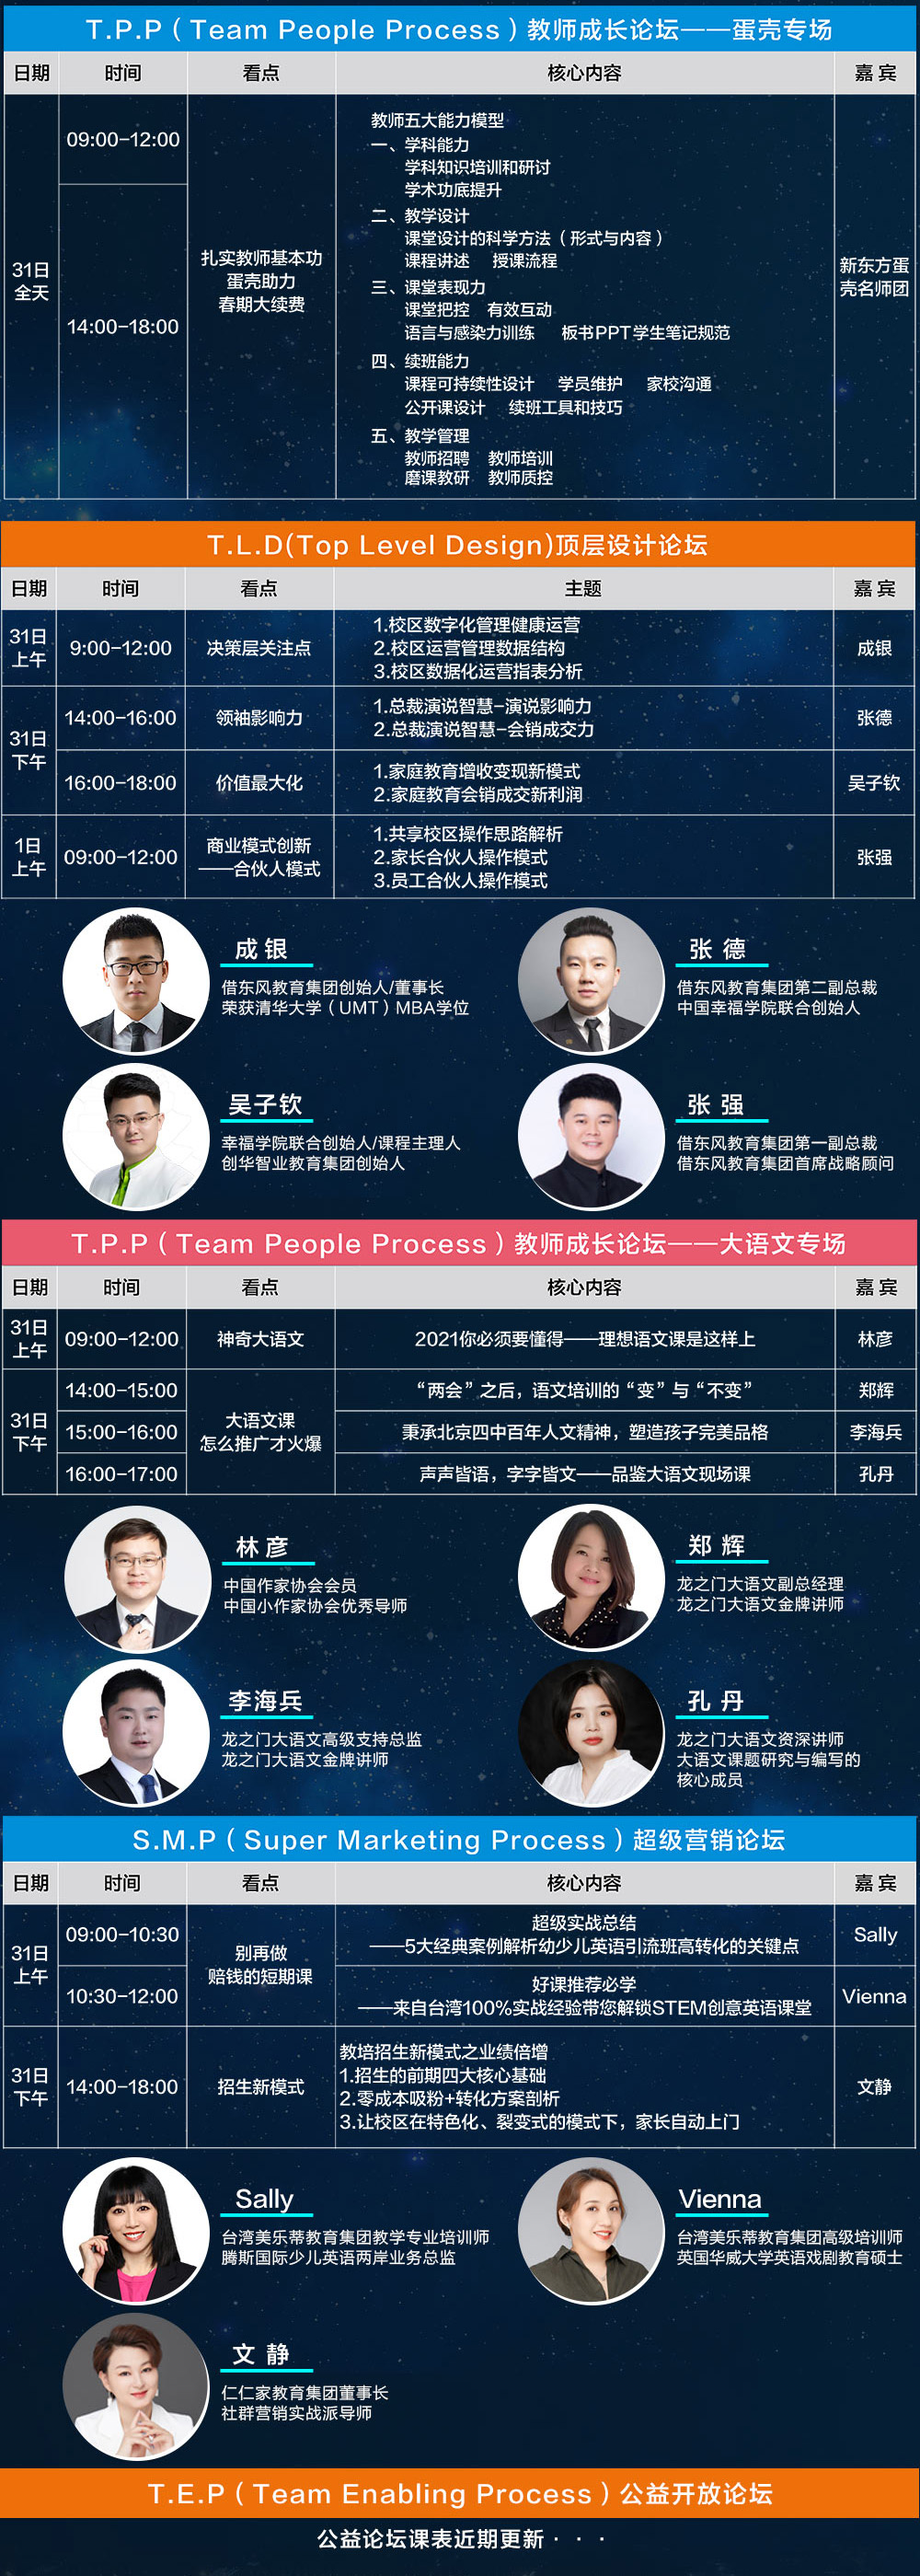 2021第六届中国教育创新力大会暨中国(郑州)教育项目加盟与教育科技展览会